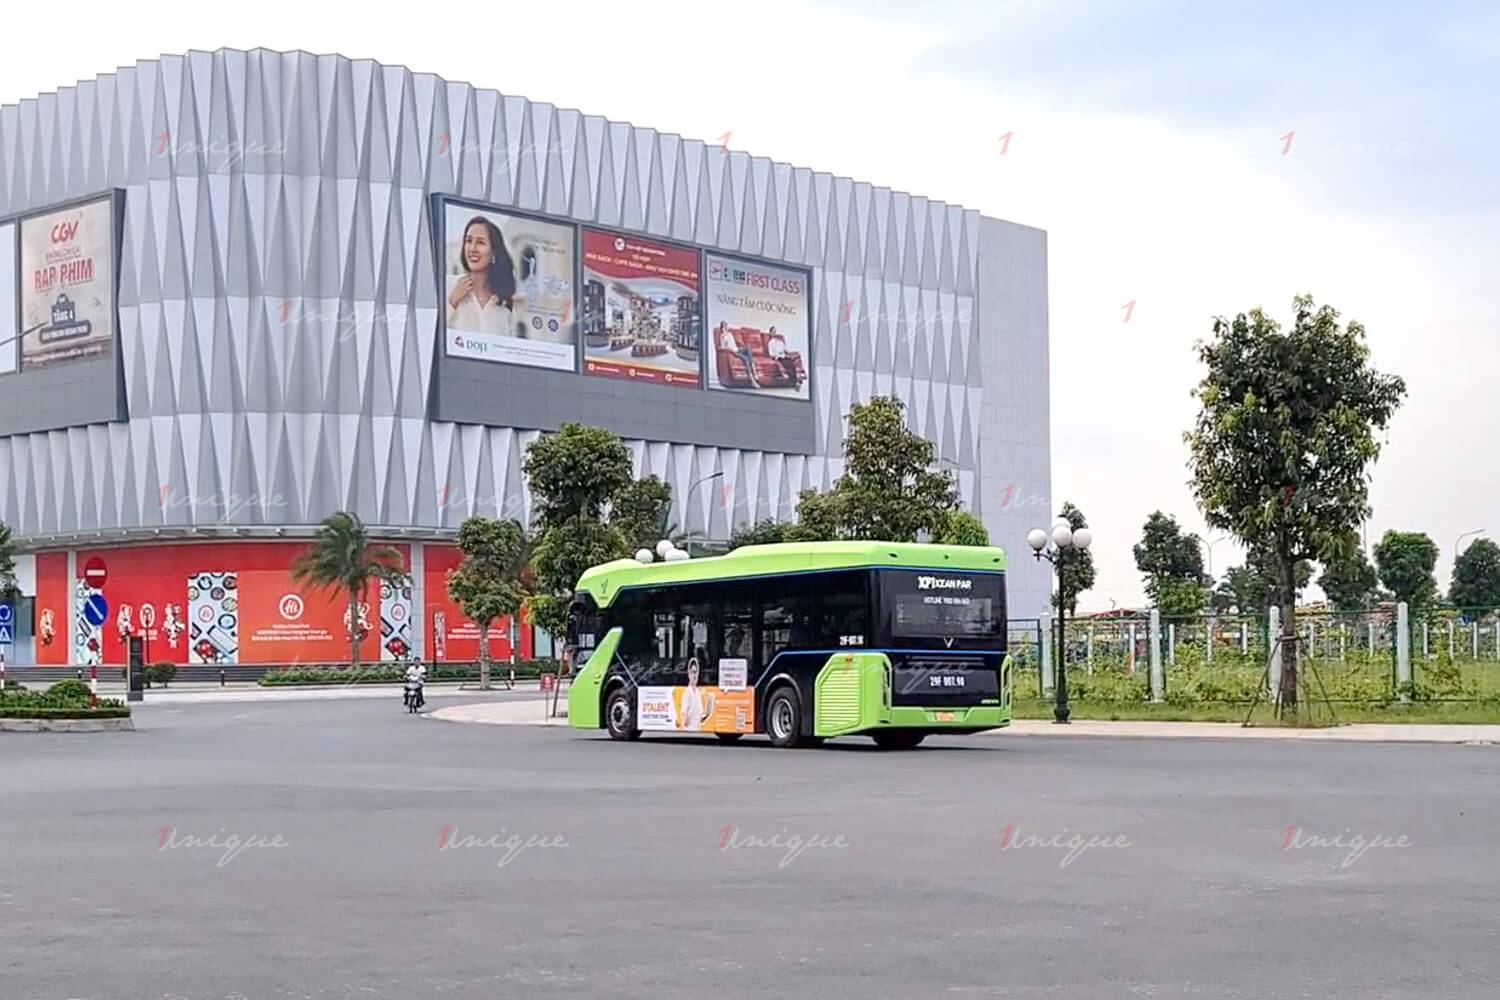 VNDIRECT quảng cáo xe buýt điện VinBus quảng bá chương trình đào tạo nghề Tài chính - Đầu tư